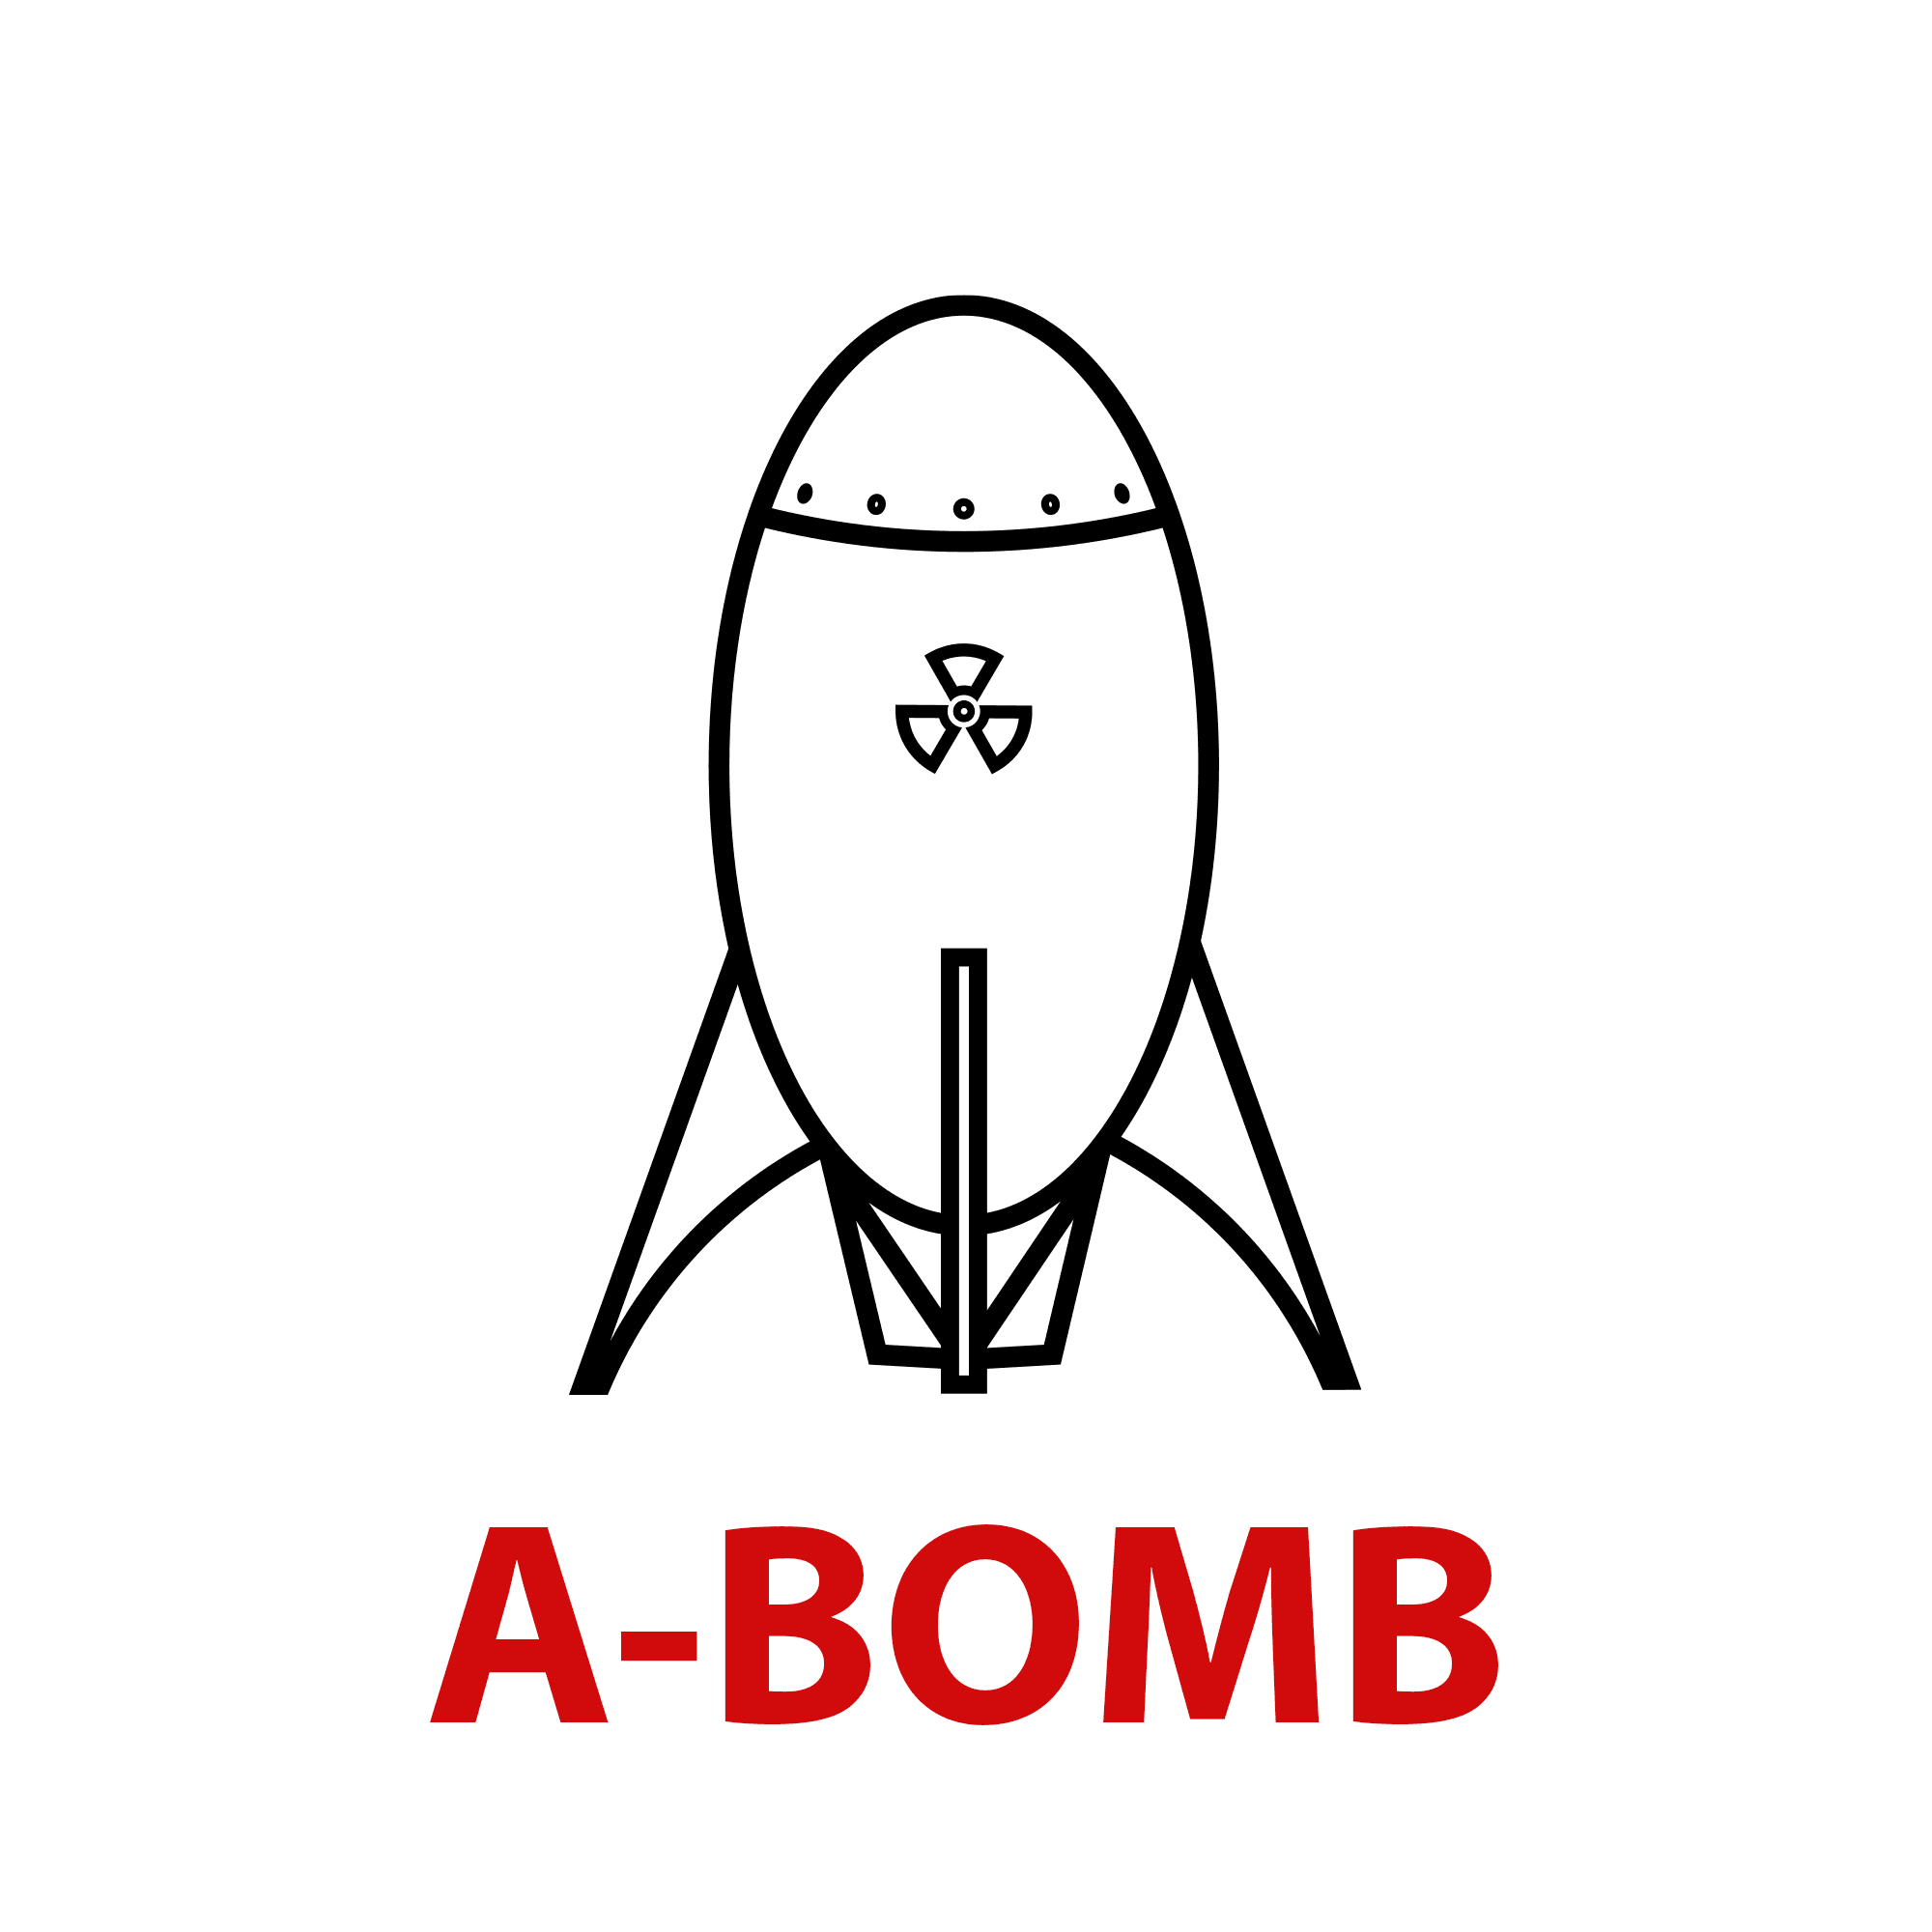 A-BOMB